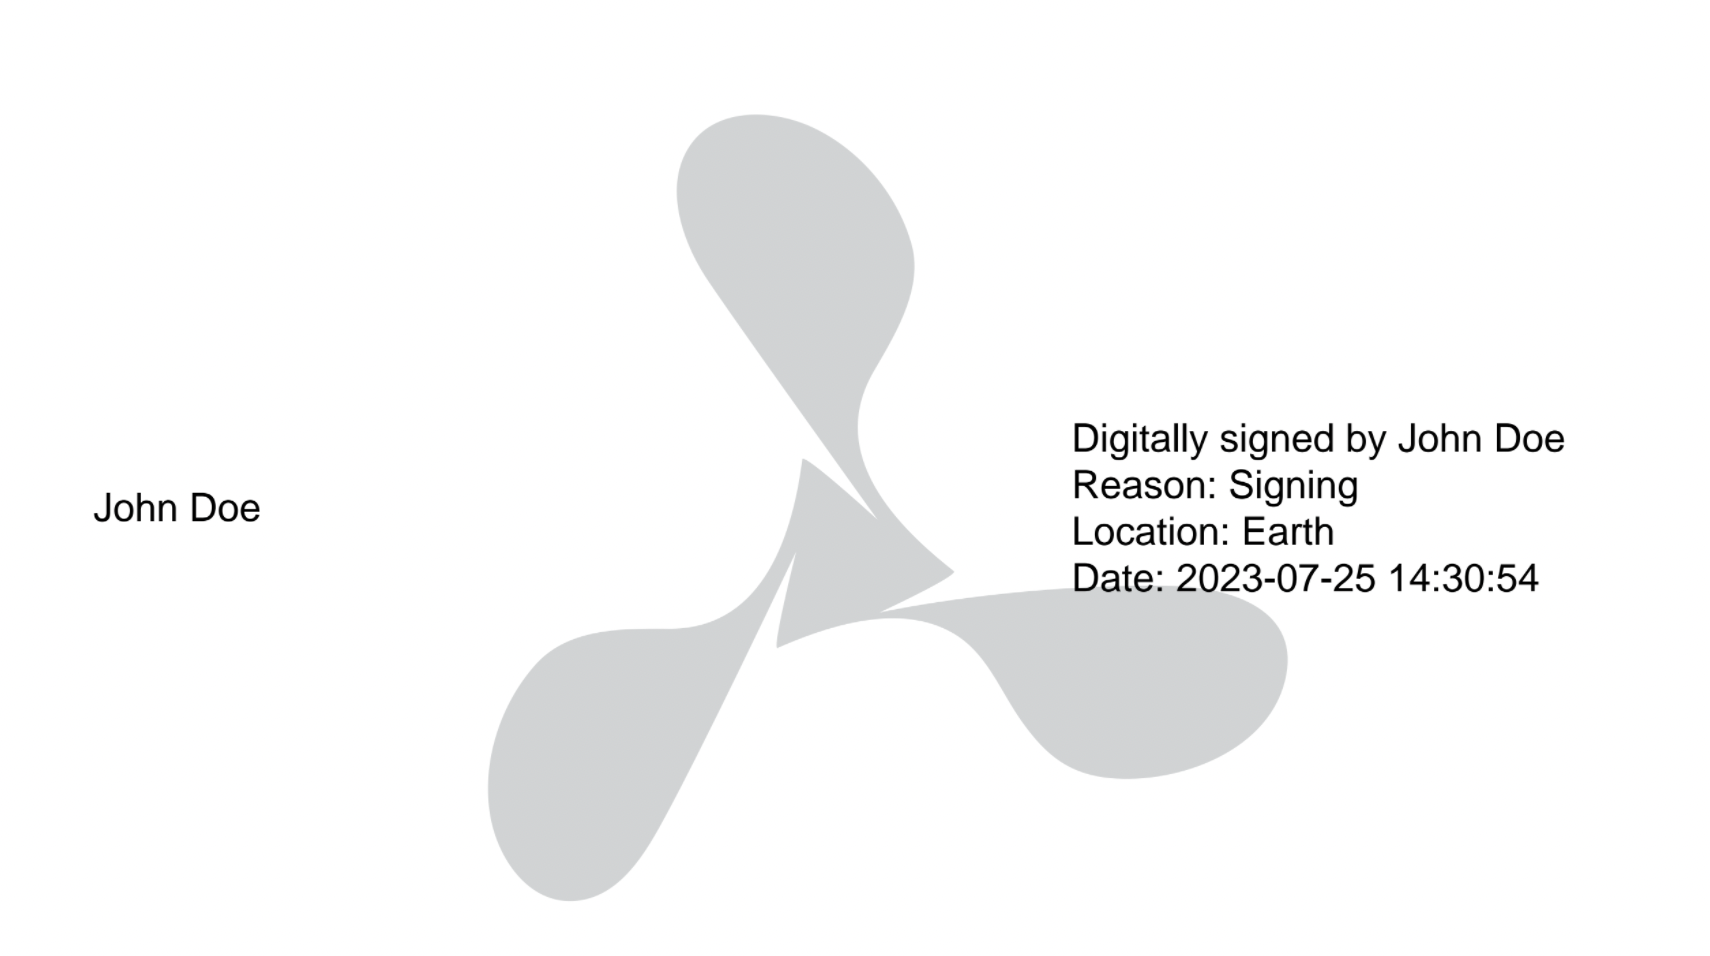 Digital signature with signatureAndDescription appearance mode.